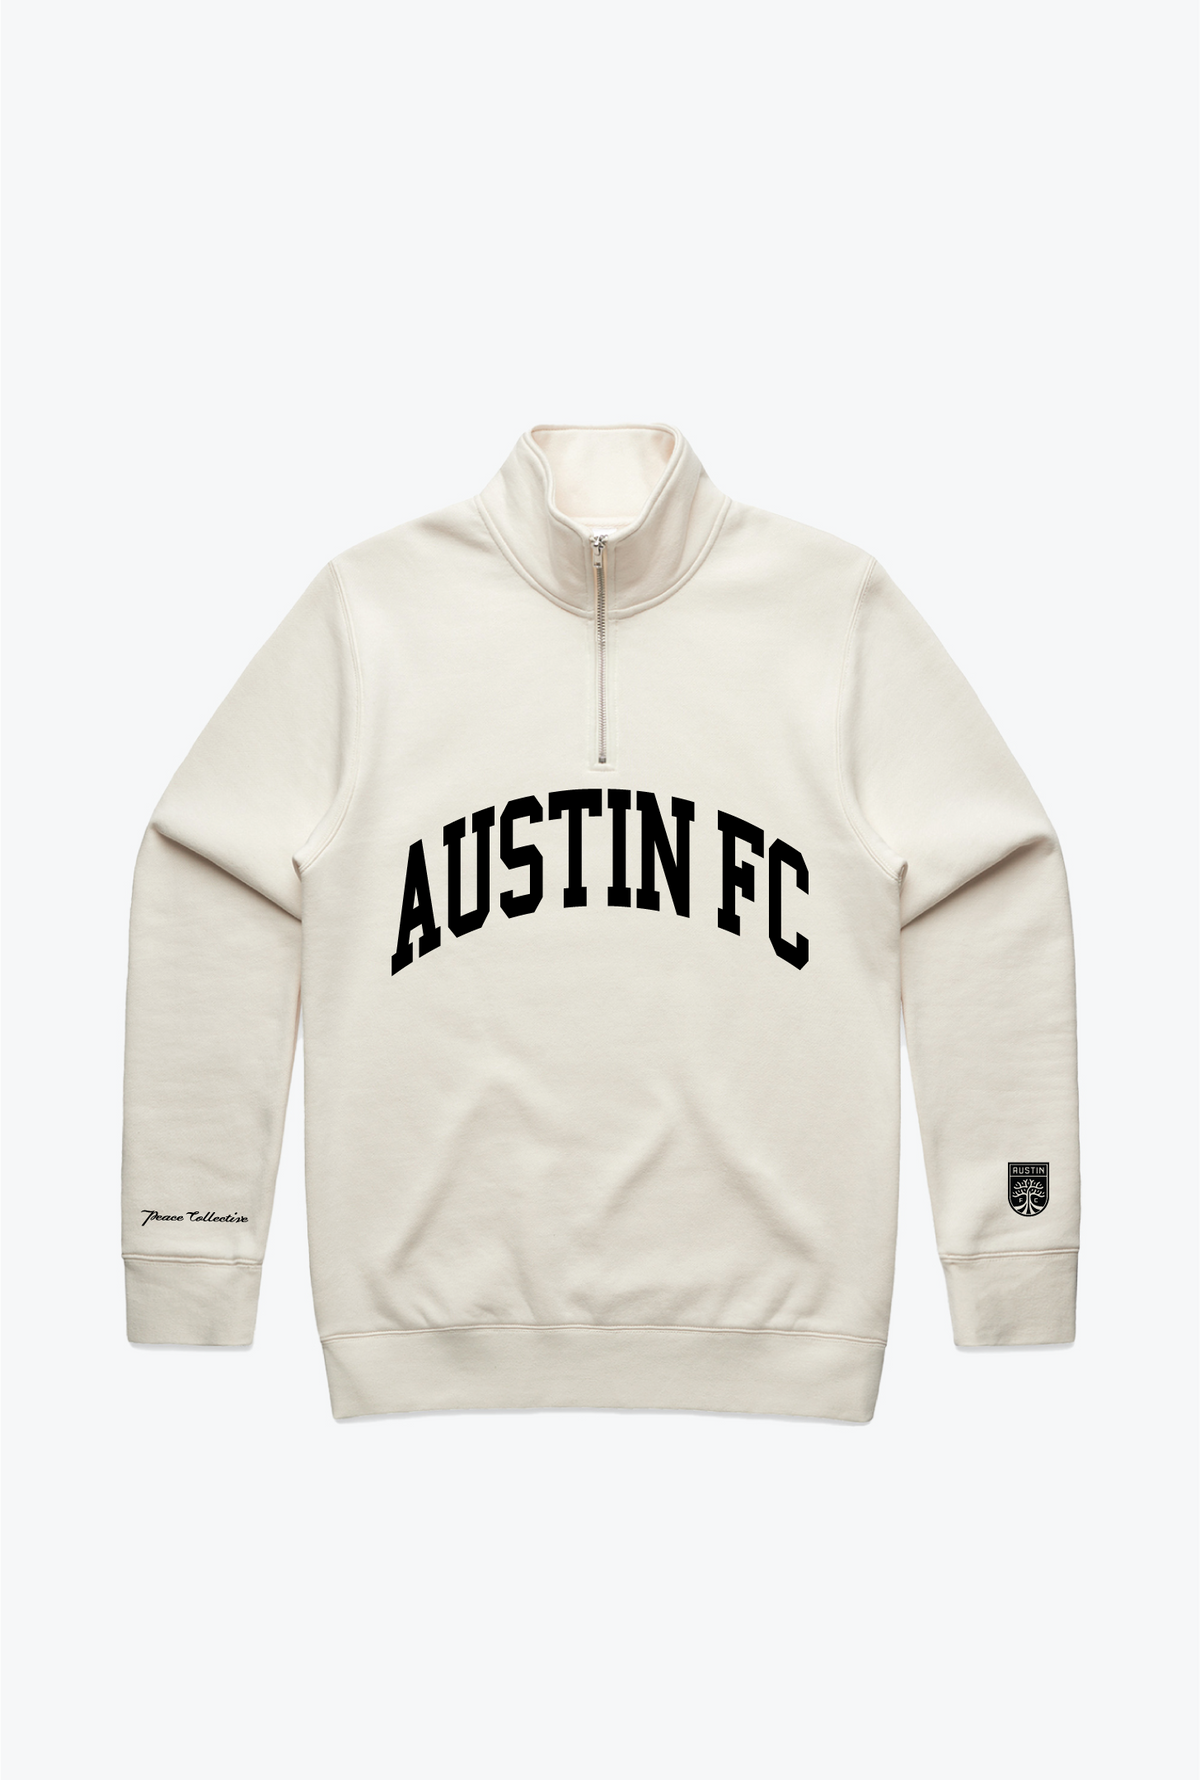 Austin FC Collegiate 1/4 Zip - Ivory